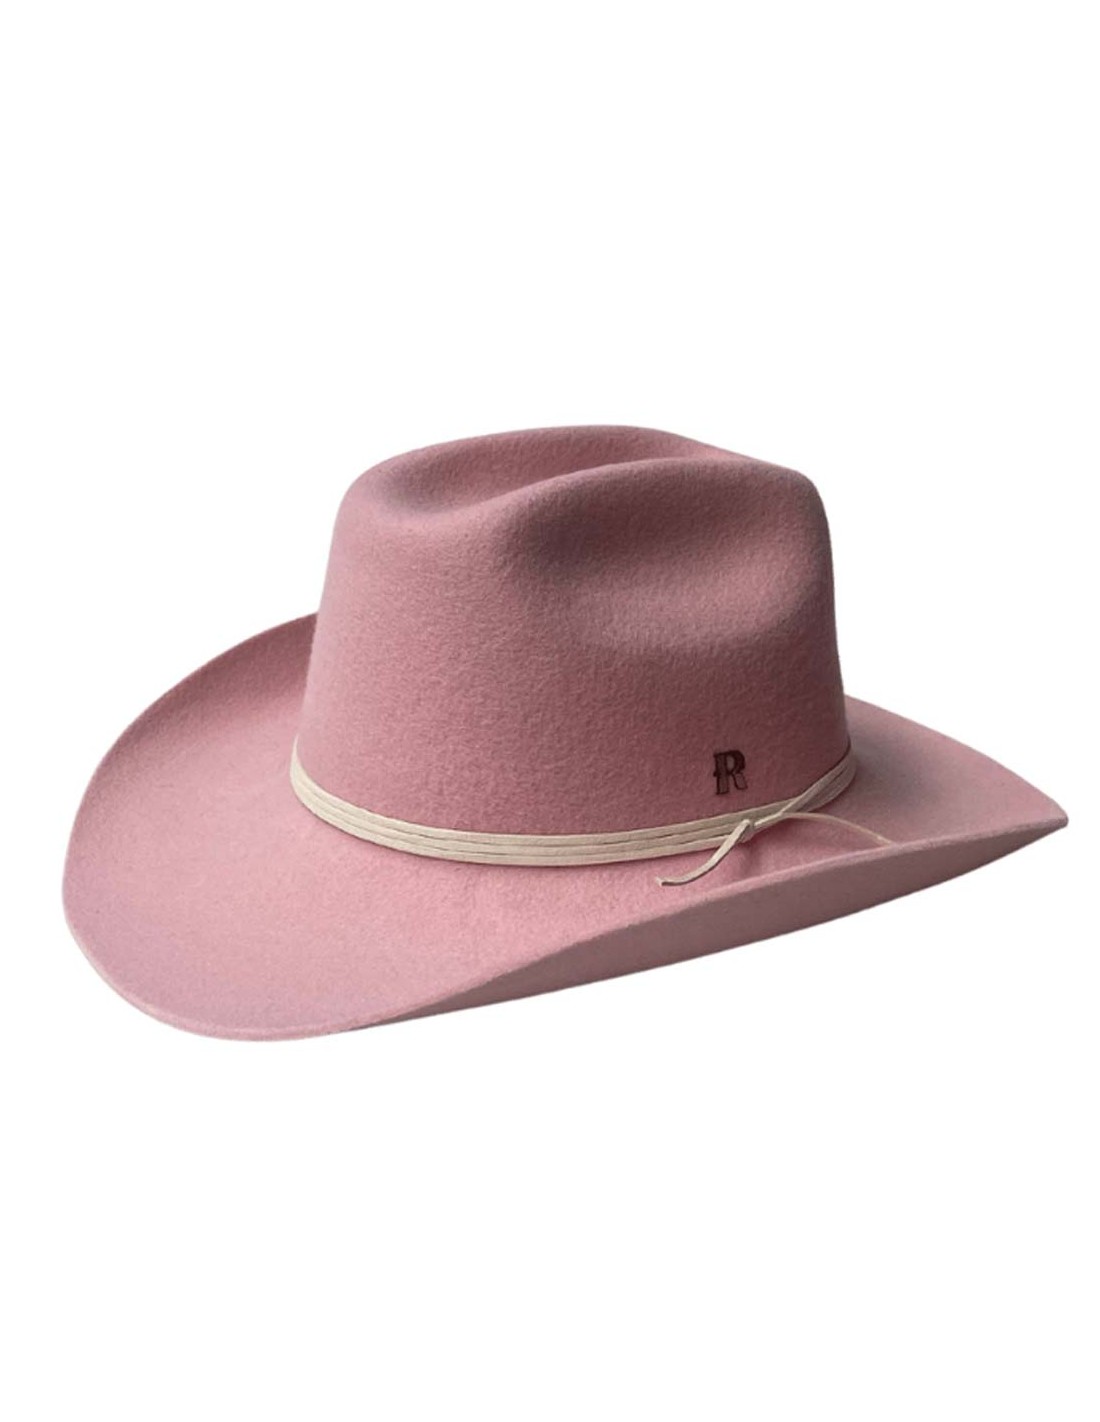 Chapeaux de Cowboy Femmes – CowboyFlow